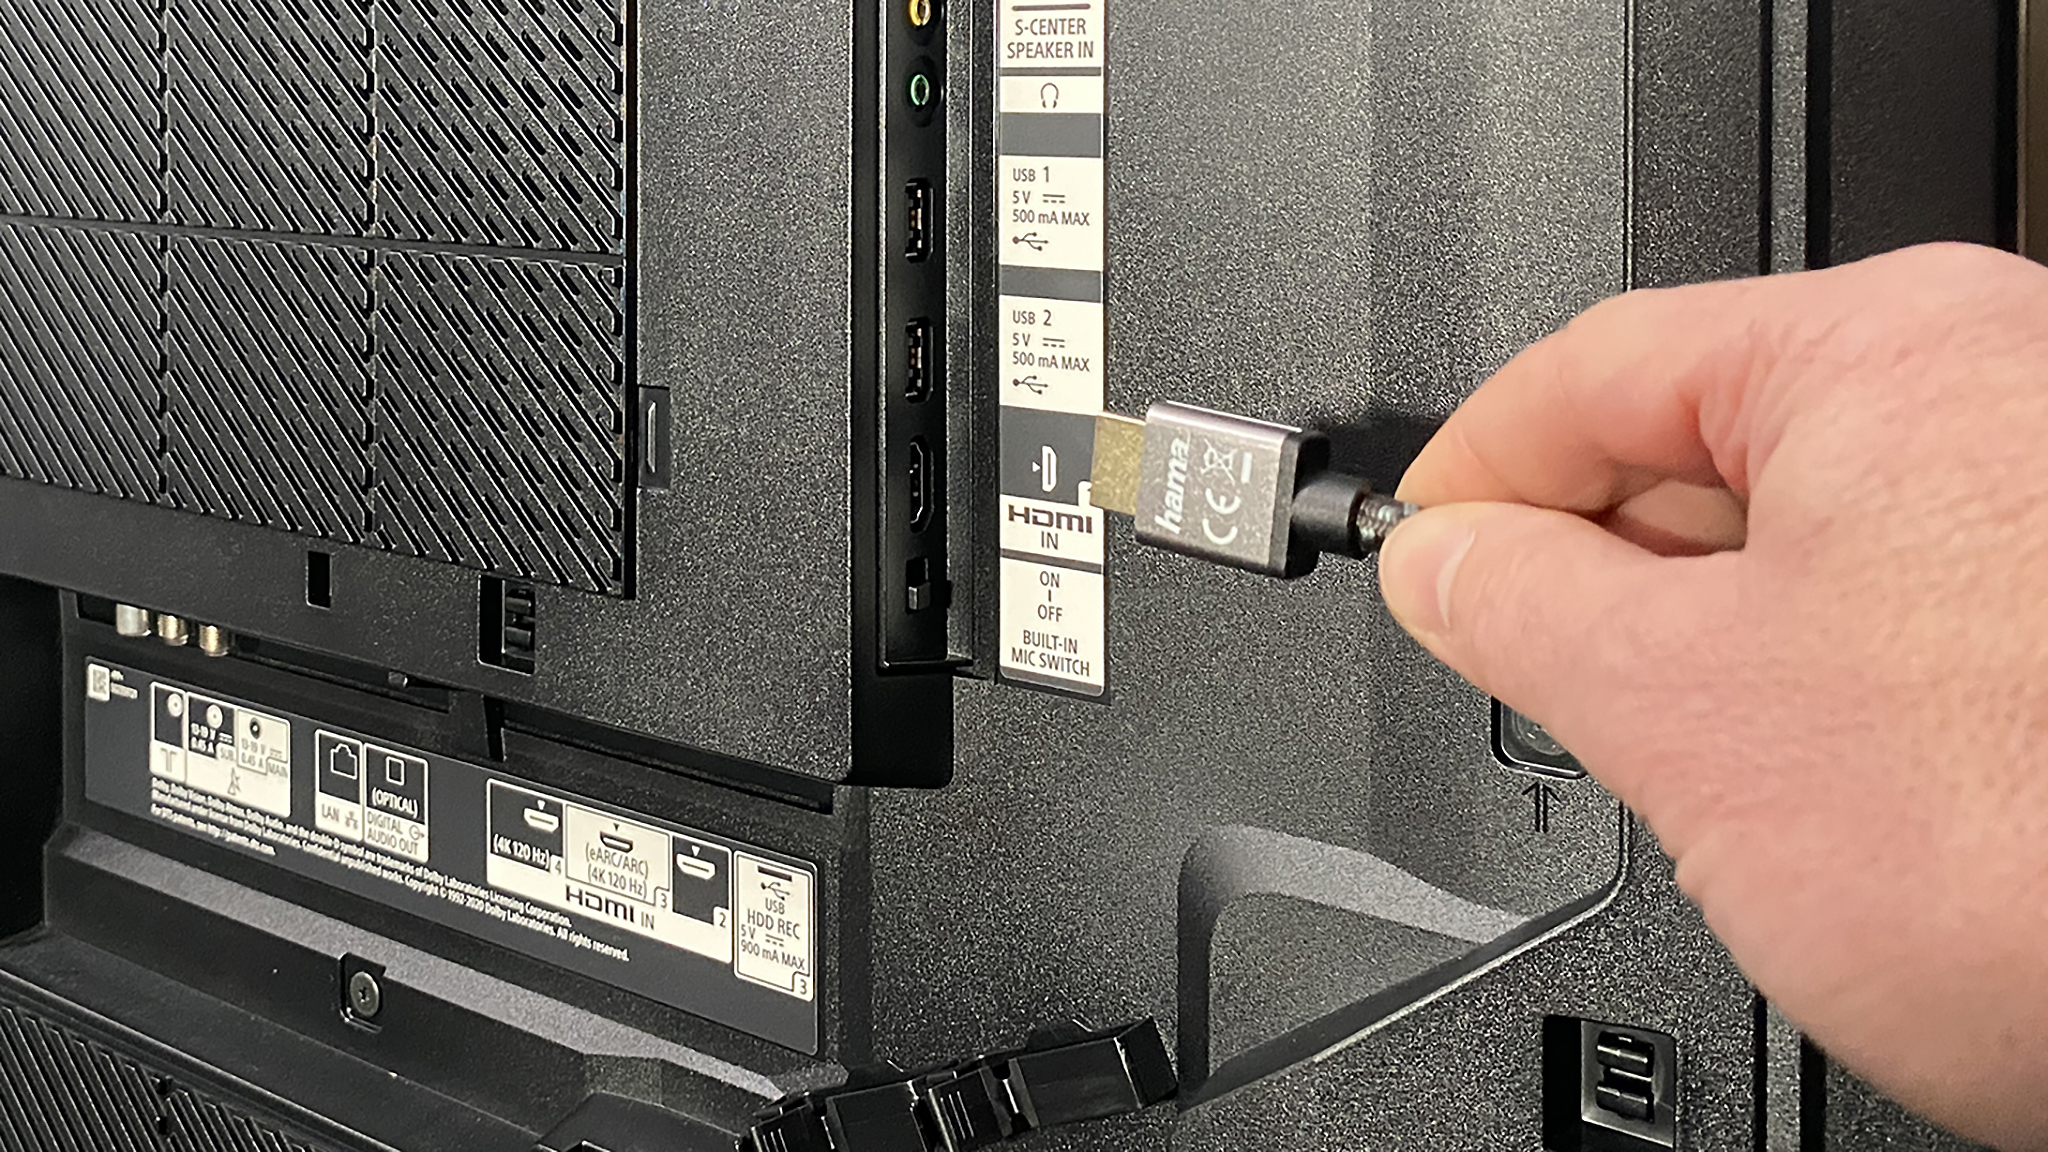 Überprüfen Sie, ob das HDMI-Kabel beschädigt oder abgenutzt ist. Wenn ja, ersetzen Sie es durch ein neues Kabel.
Überprüfen Sie, ob der richtige HDMI-Eingang am TV ausgewählt ist. Verwenden Sie die TV-Fernbedienung, um den korrekten HDMI-Eingang zu wählen.